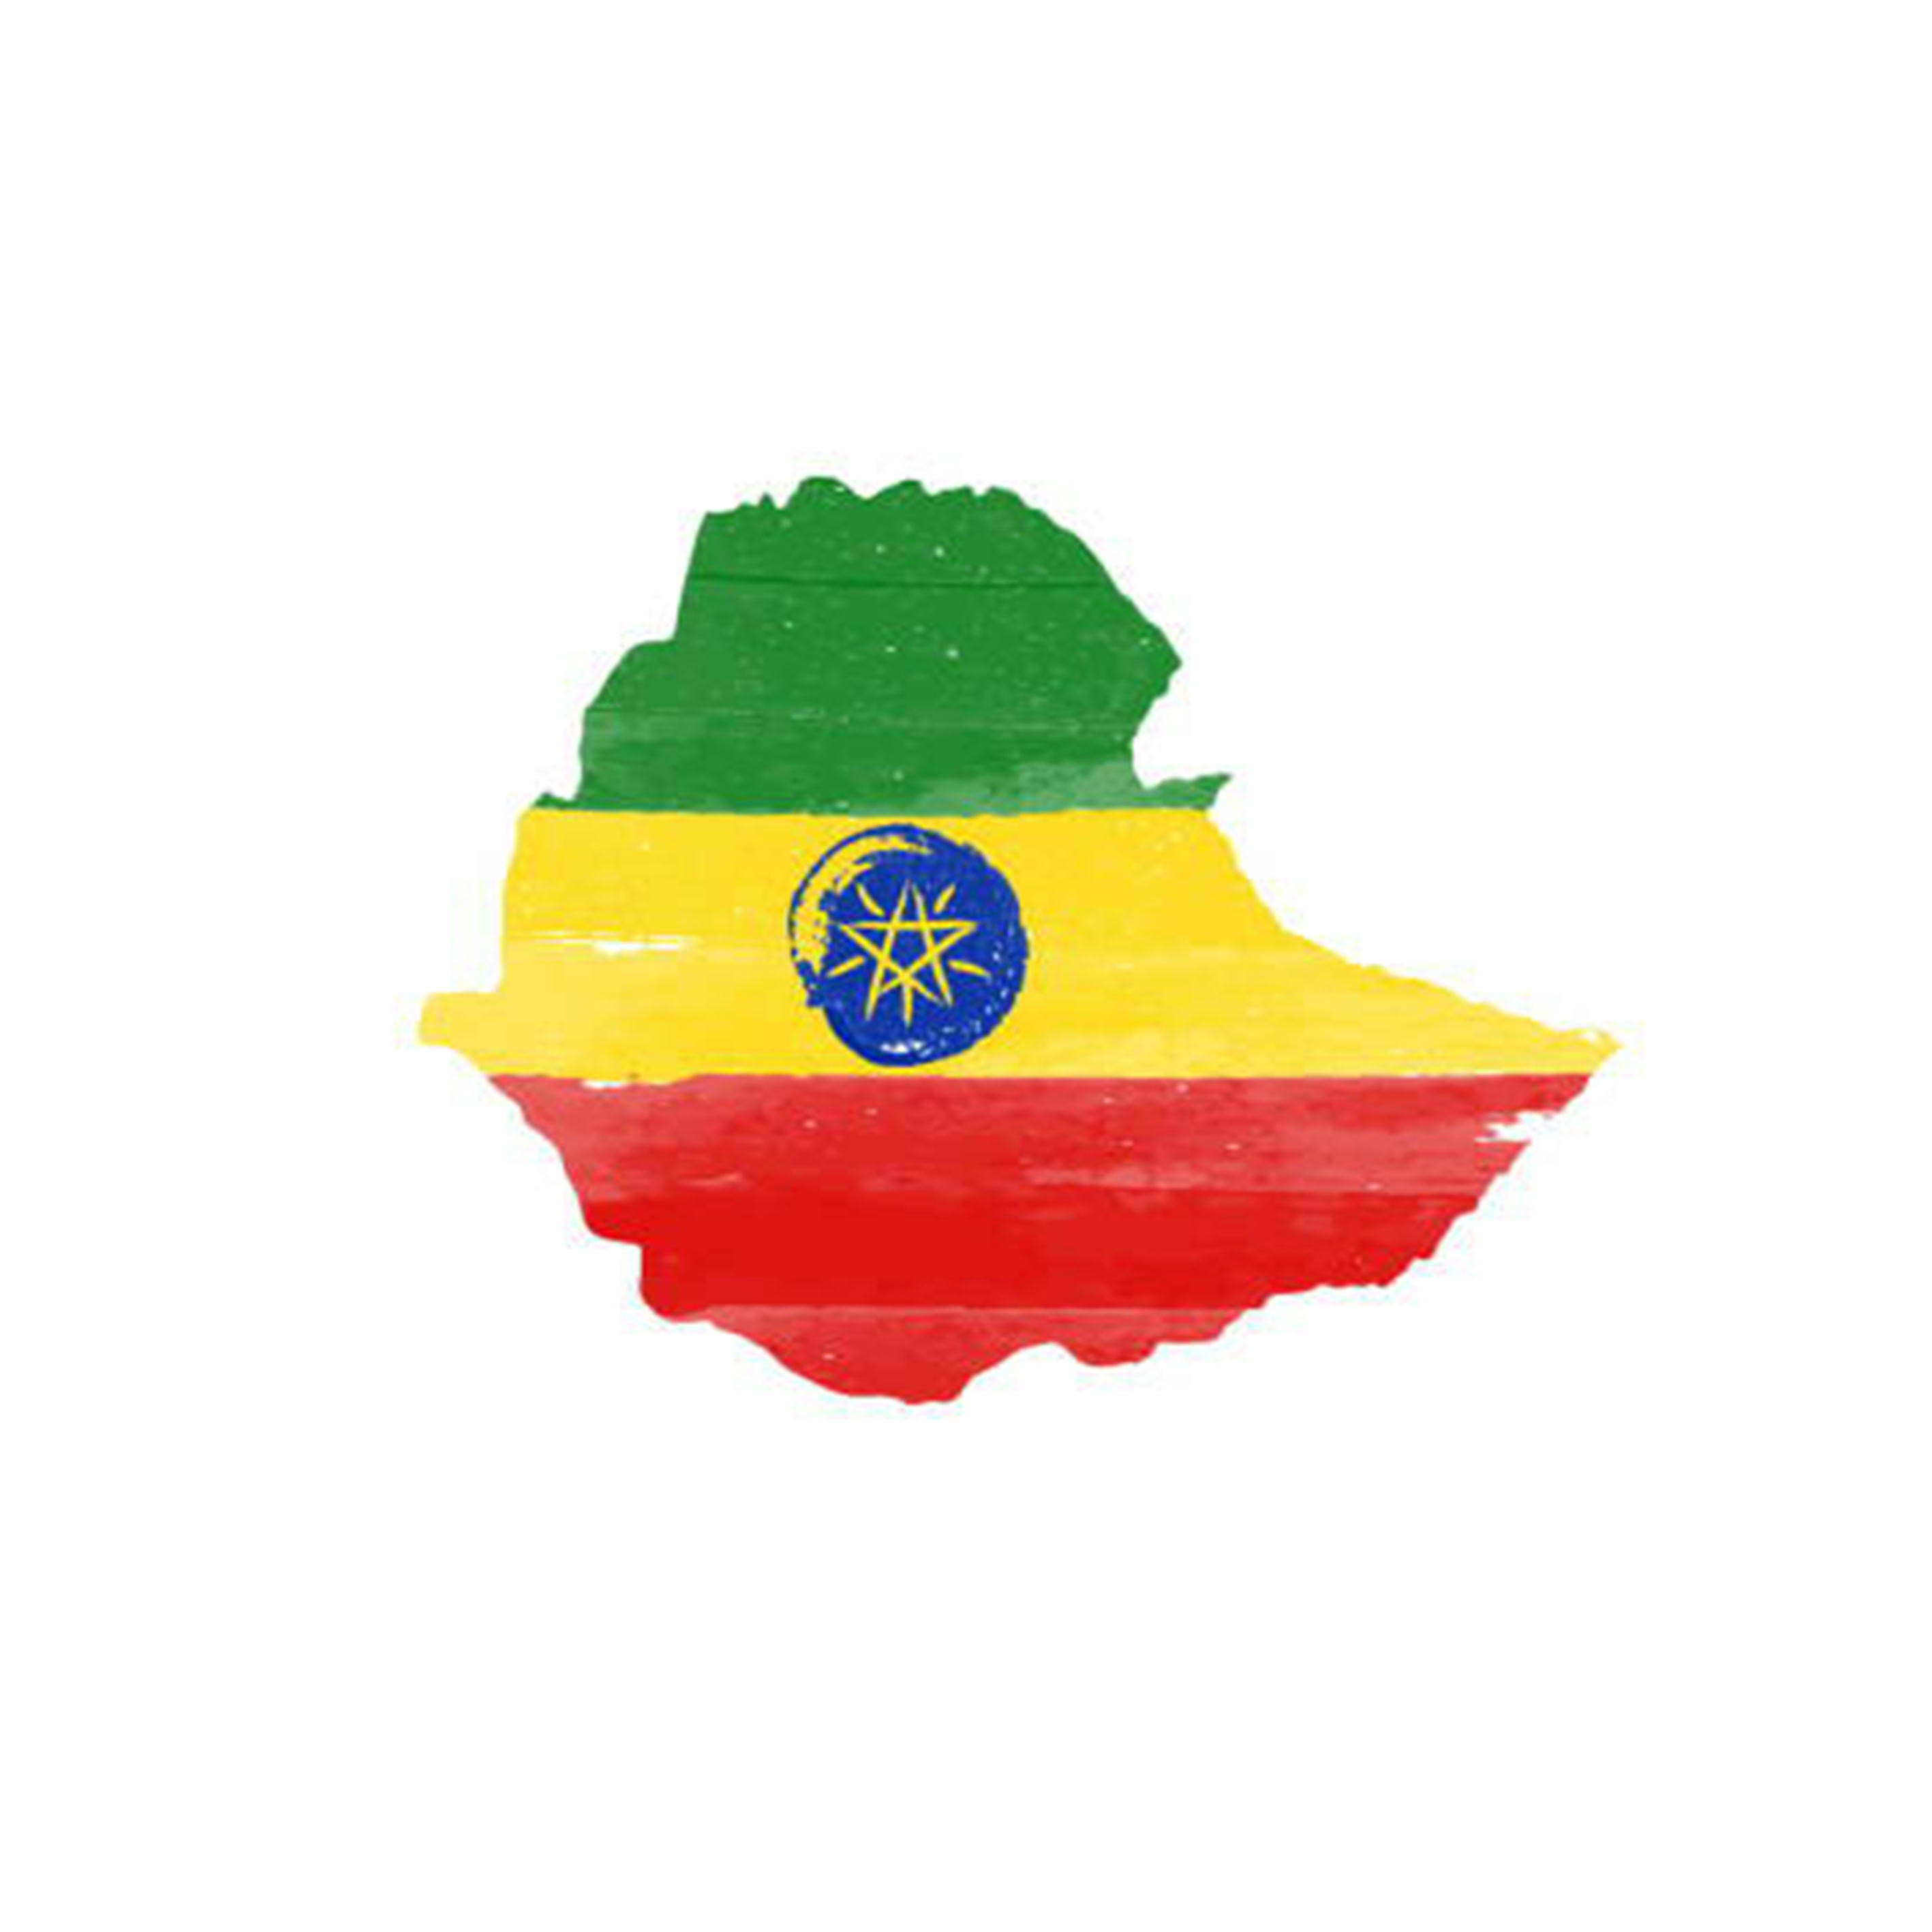 エチオピア、ウォッシュト精製のニュークロップ販売開始しました！